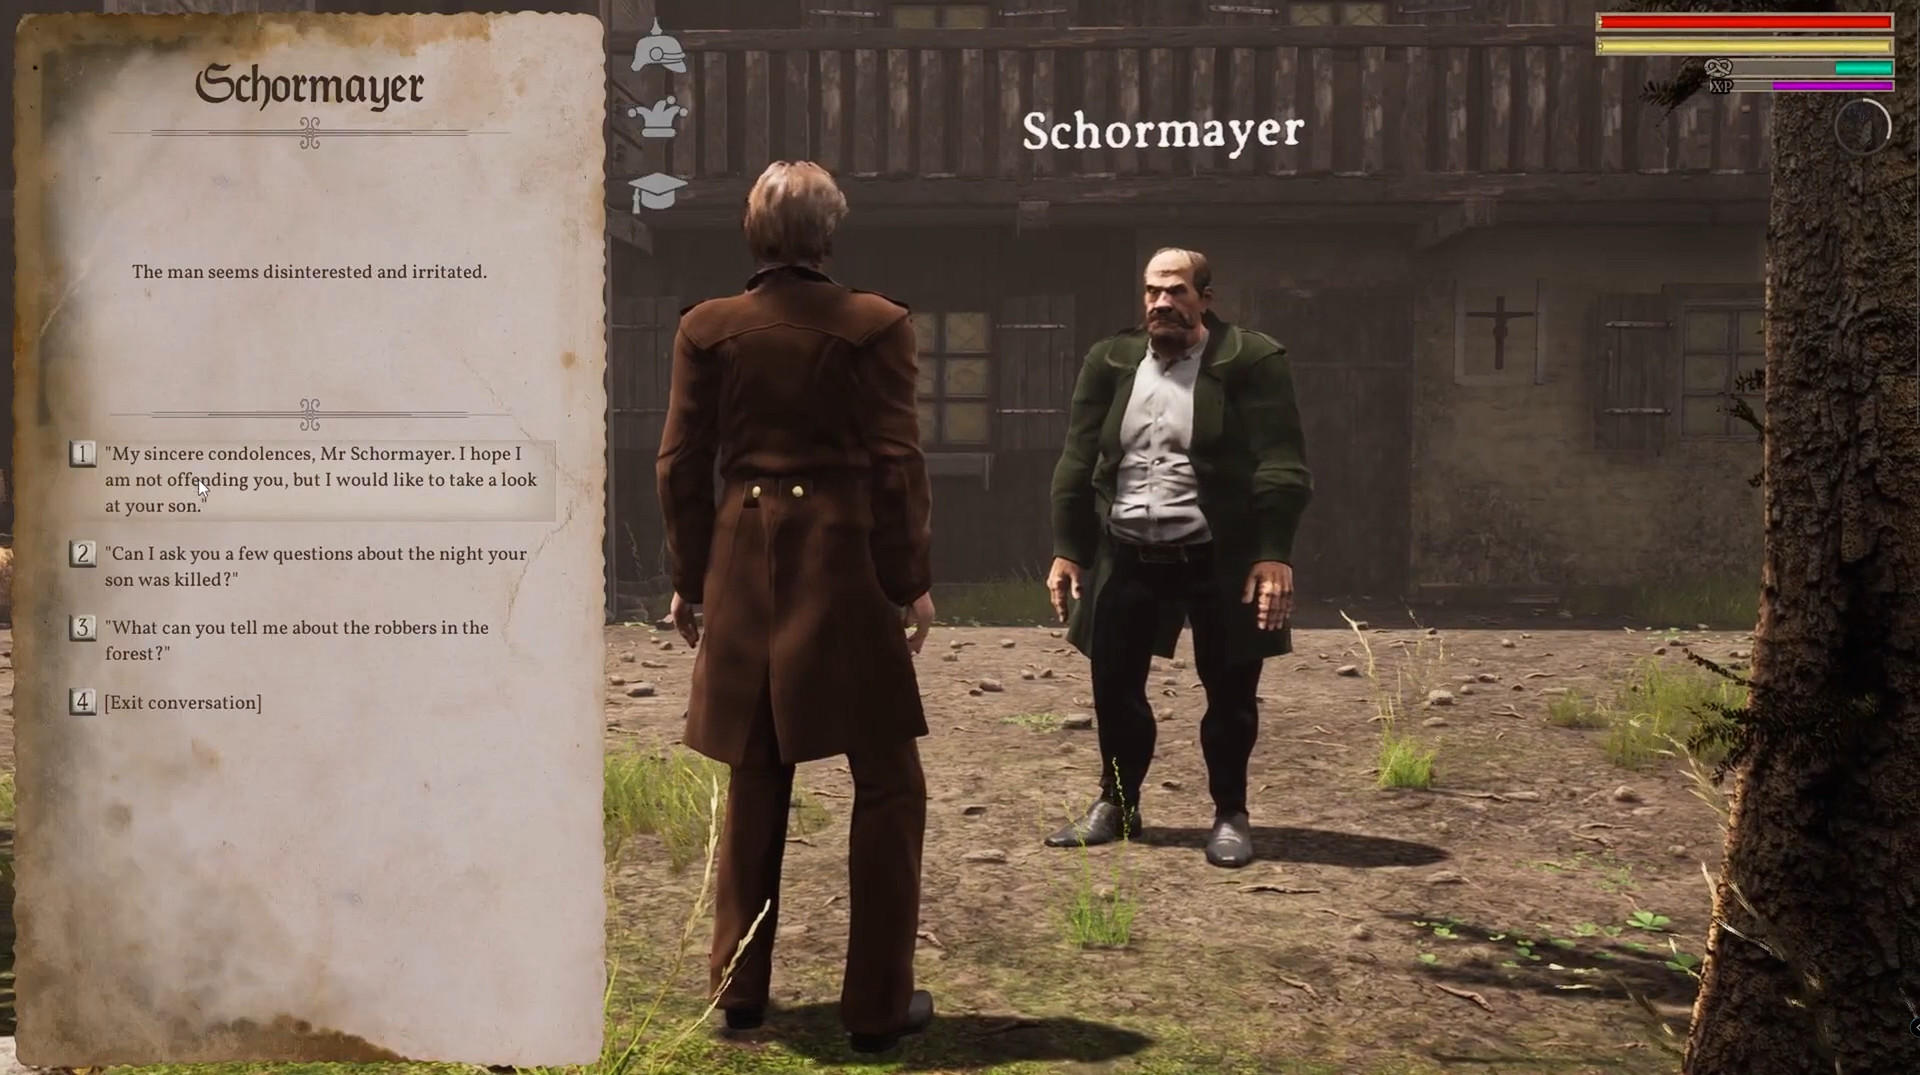 Screenshot 1 of Thanh tra Schmidt - Câu chuyện xứ Bavaria 